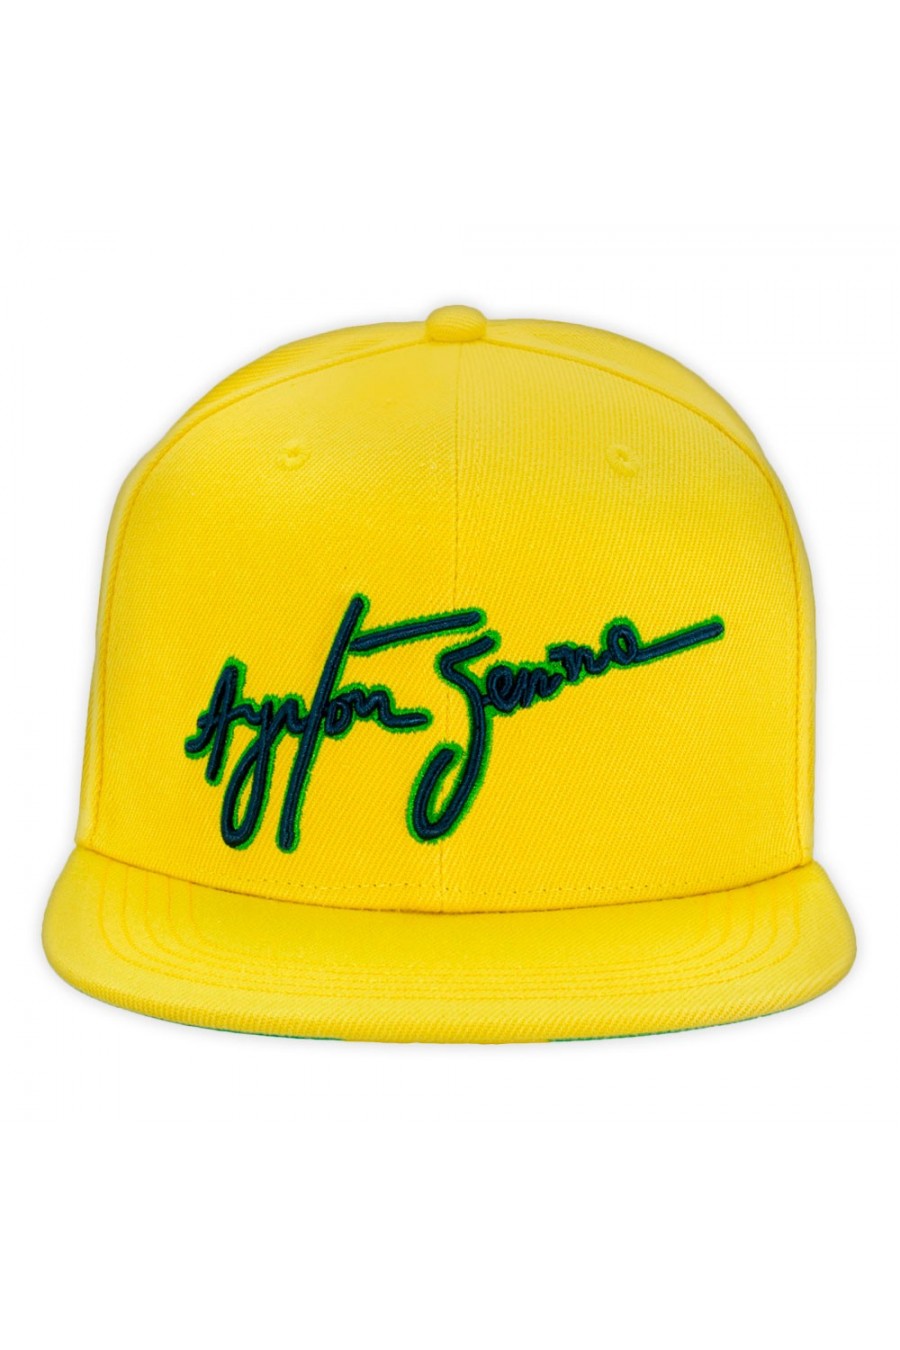 Ayrton Senna Brasilien Cap